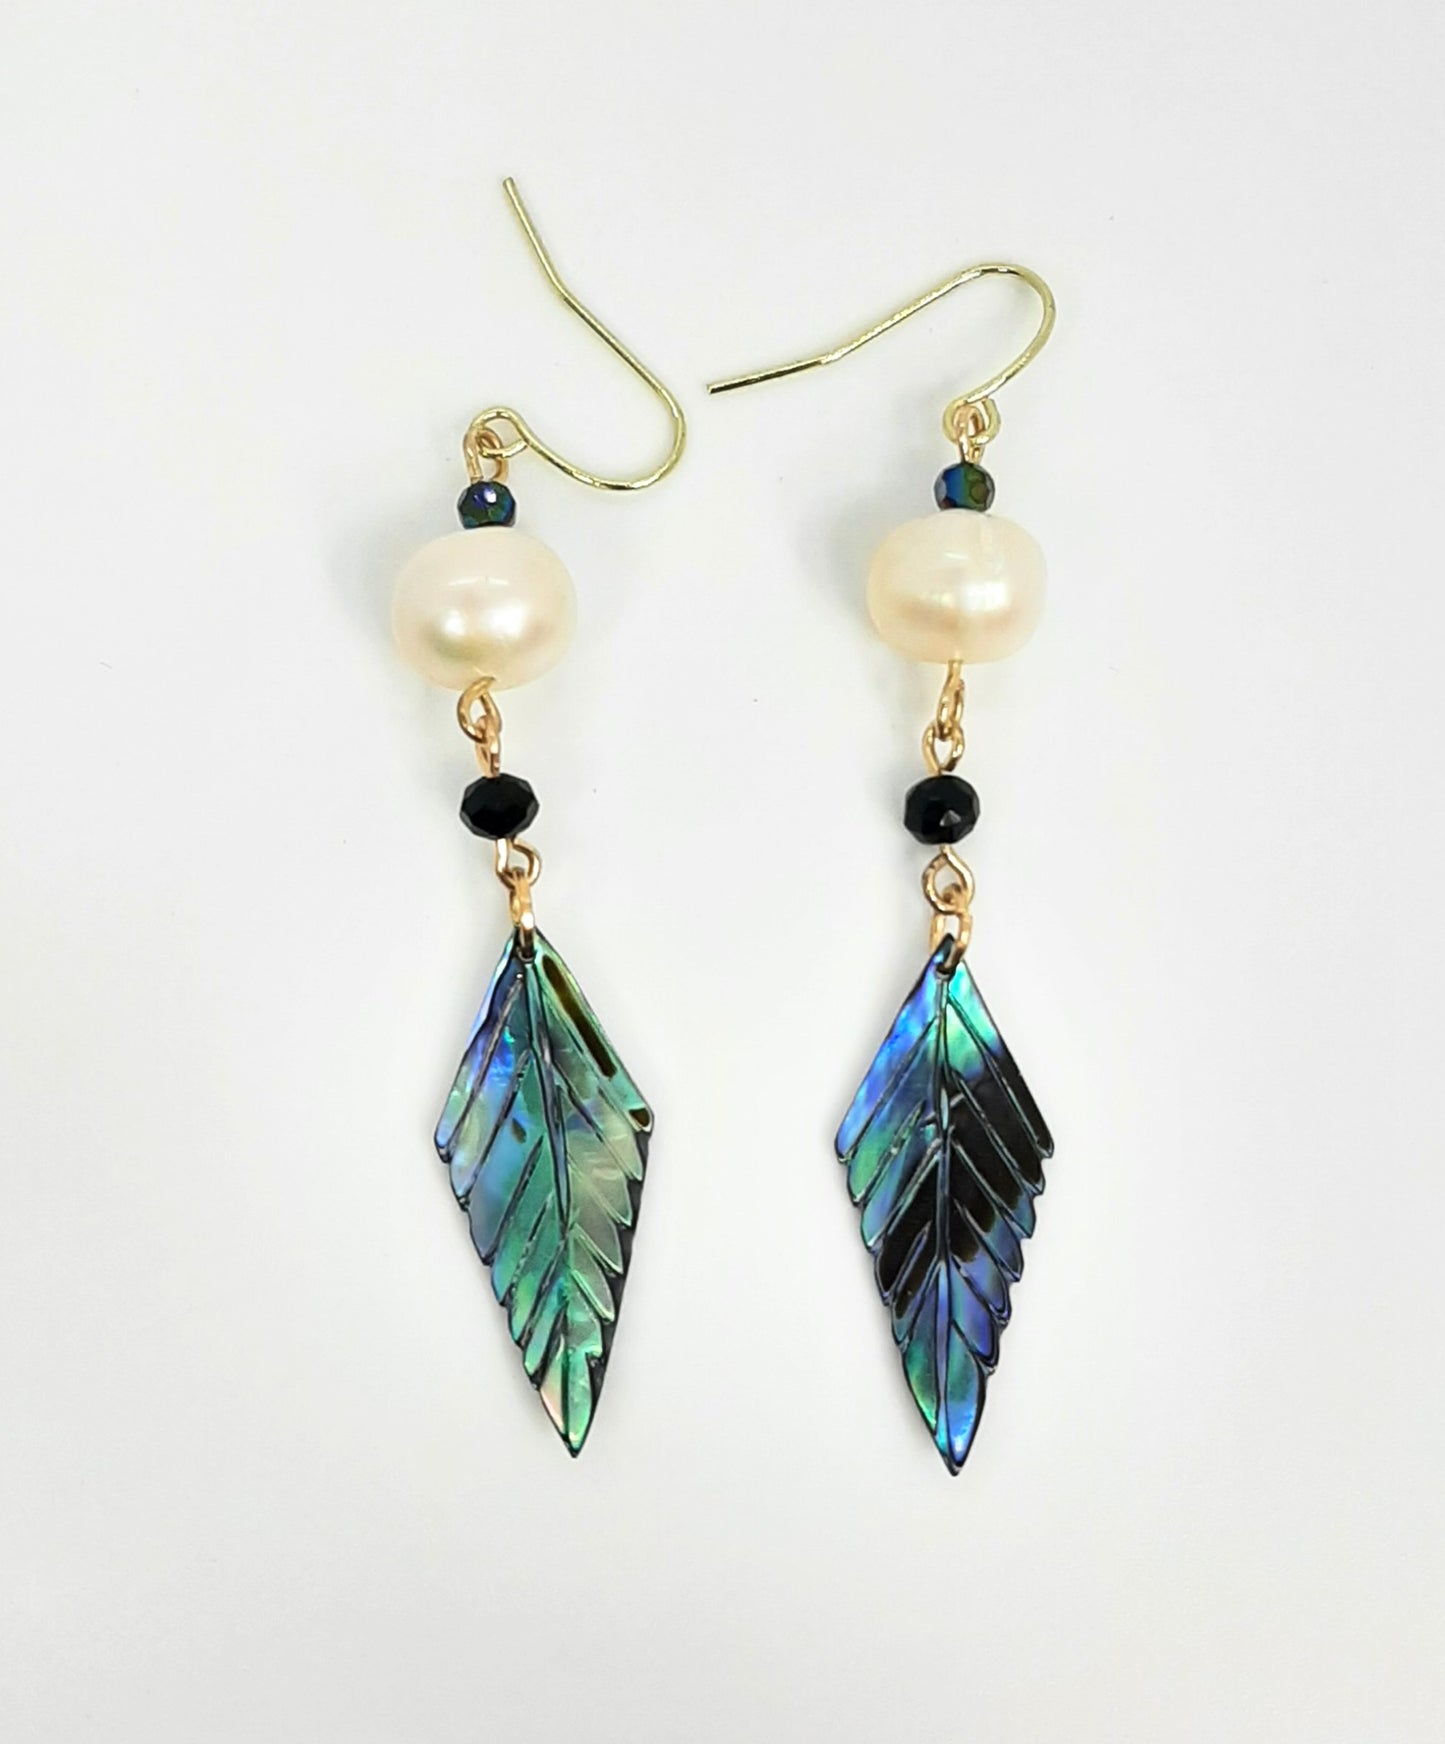 Freshwater Pearls + Abalone Leaves Earrings